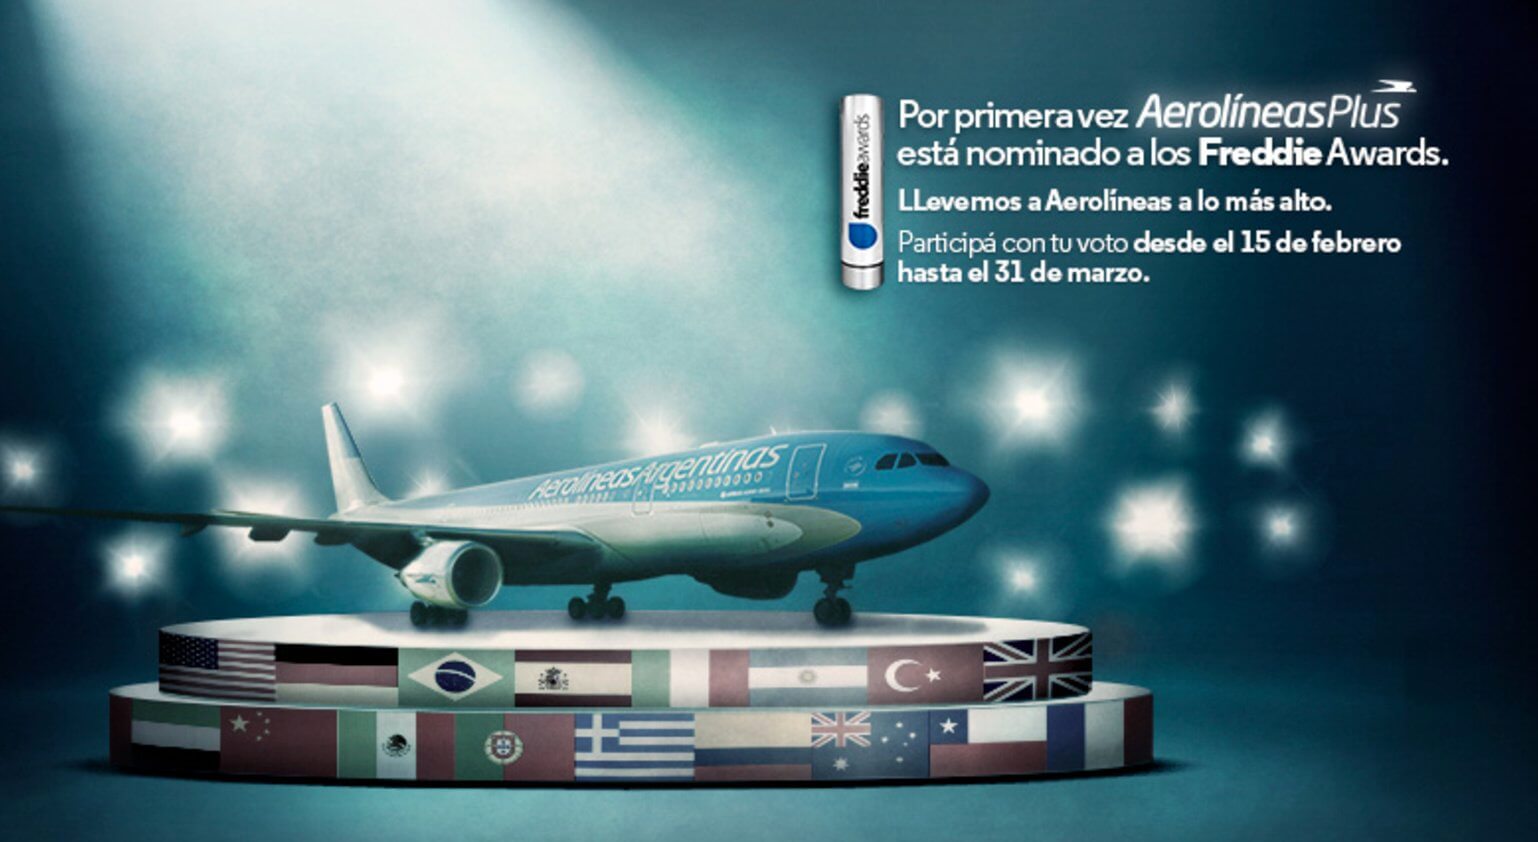 Freddie Awards AEROLINEAS PLUS Aerolineas Argentinas